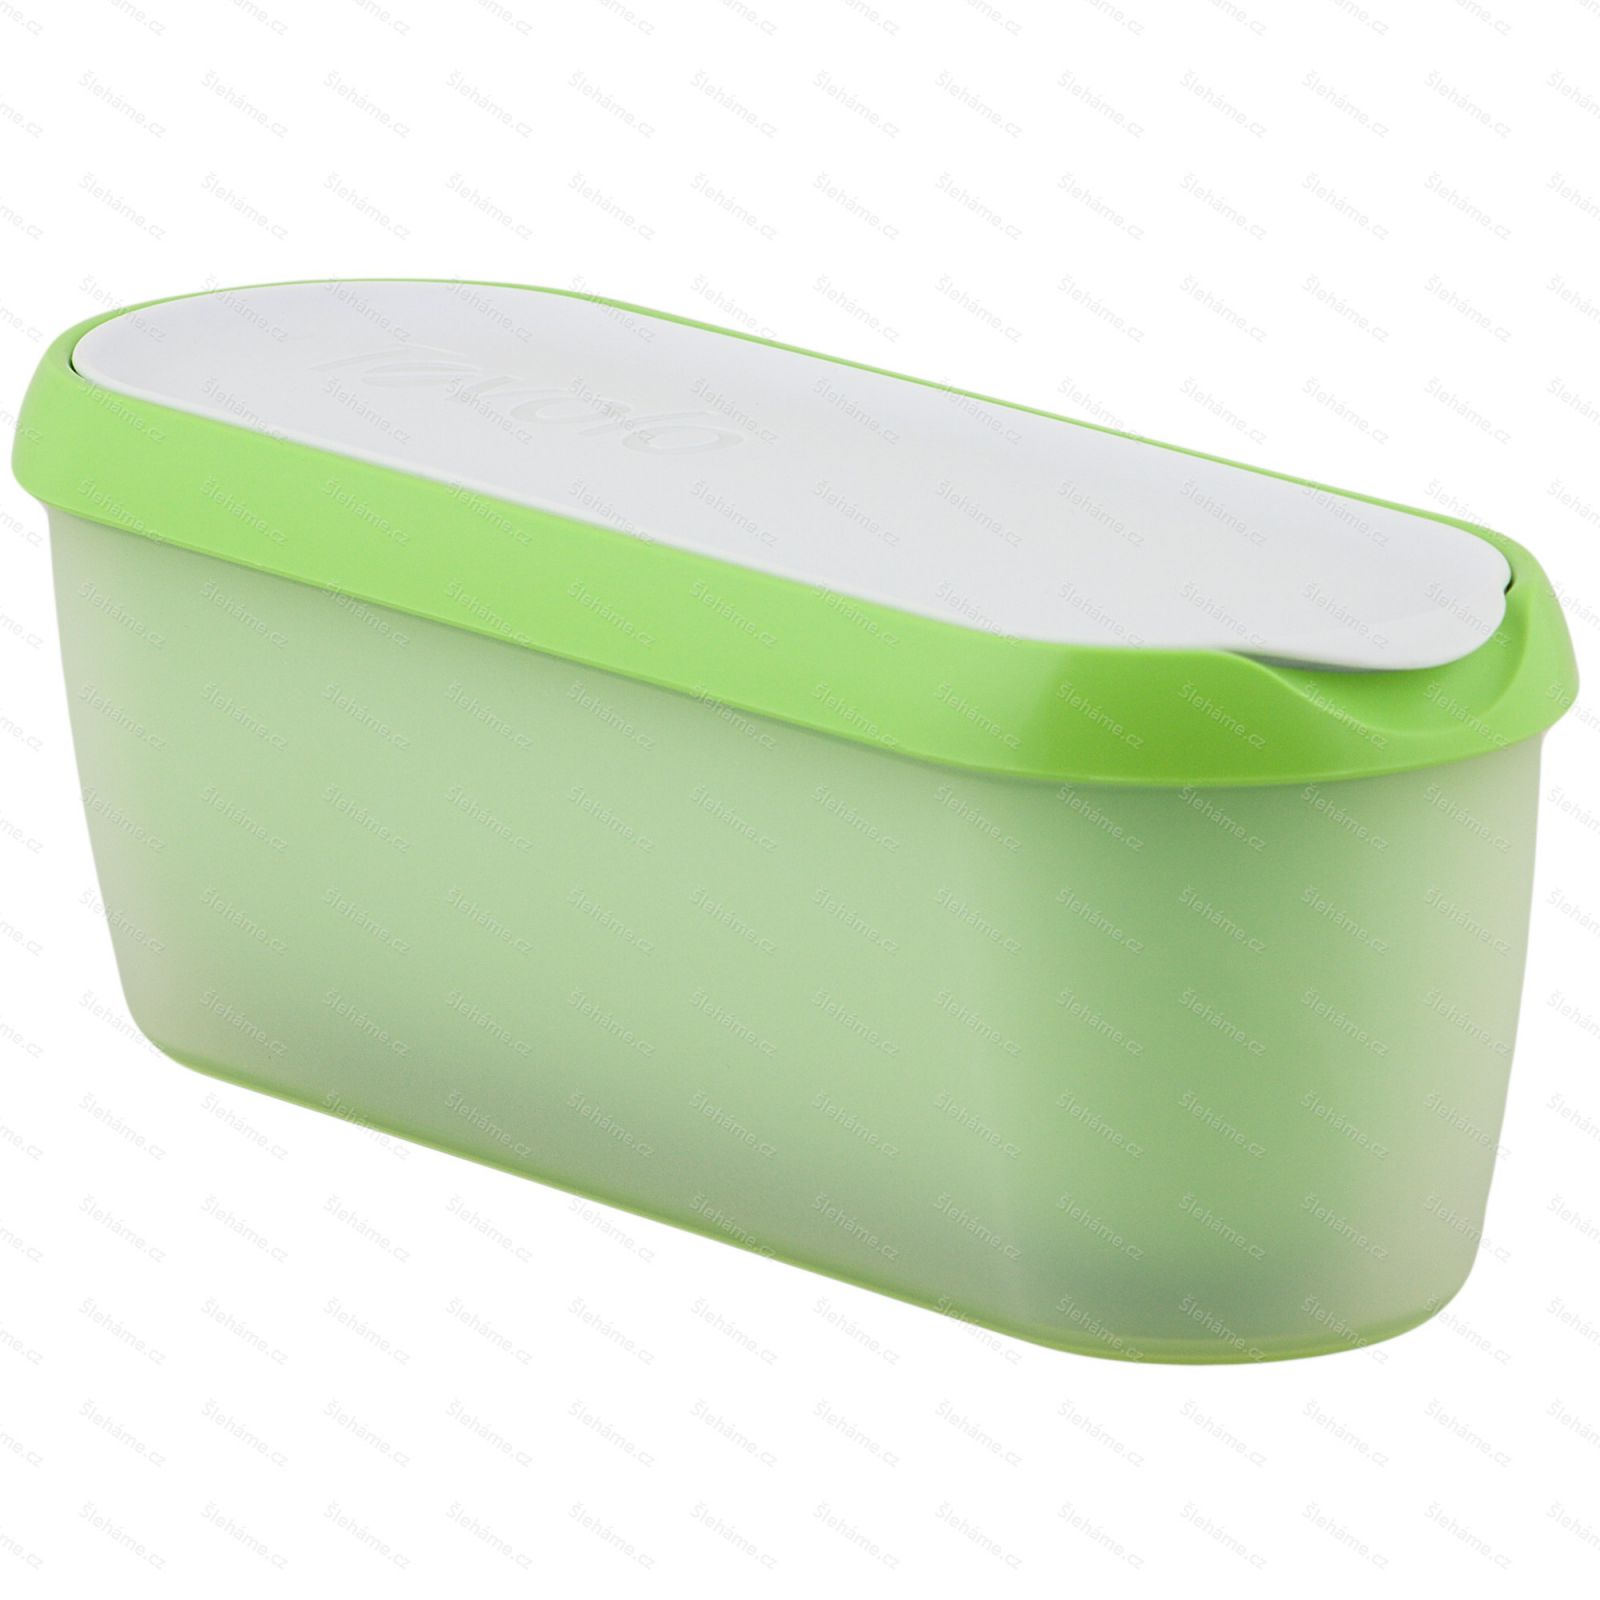 Ice cream tub Tovolo GLIDE-A-SCOOP 1.4 l, pistachio - main view